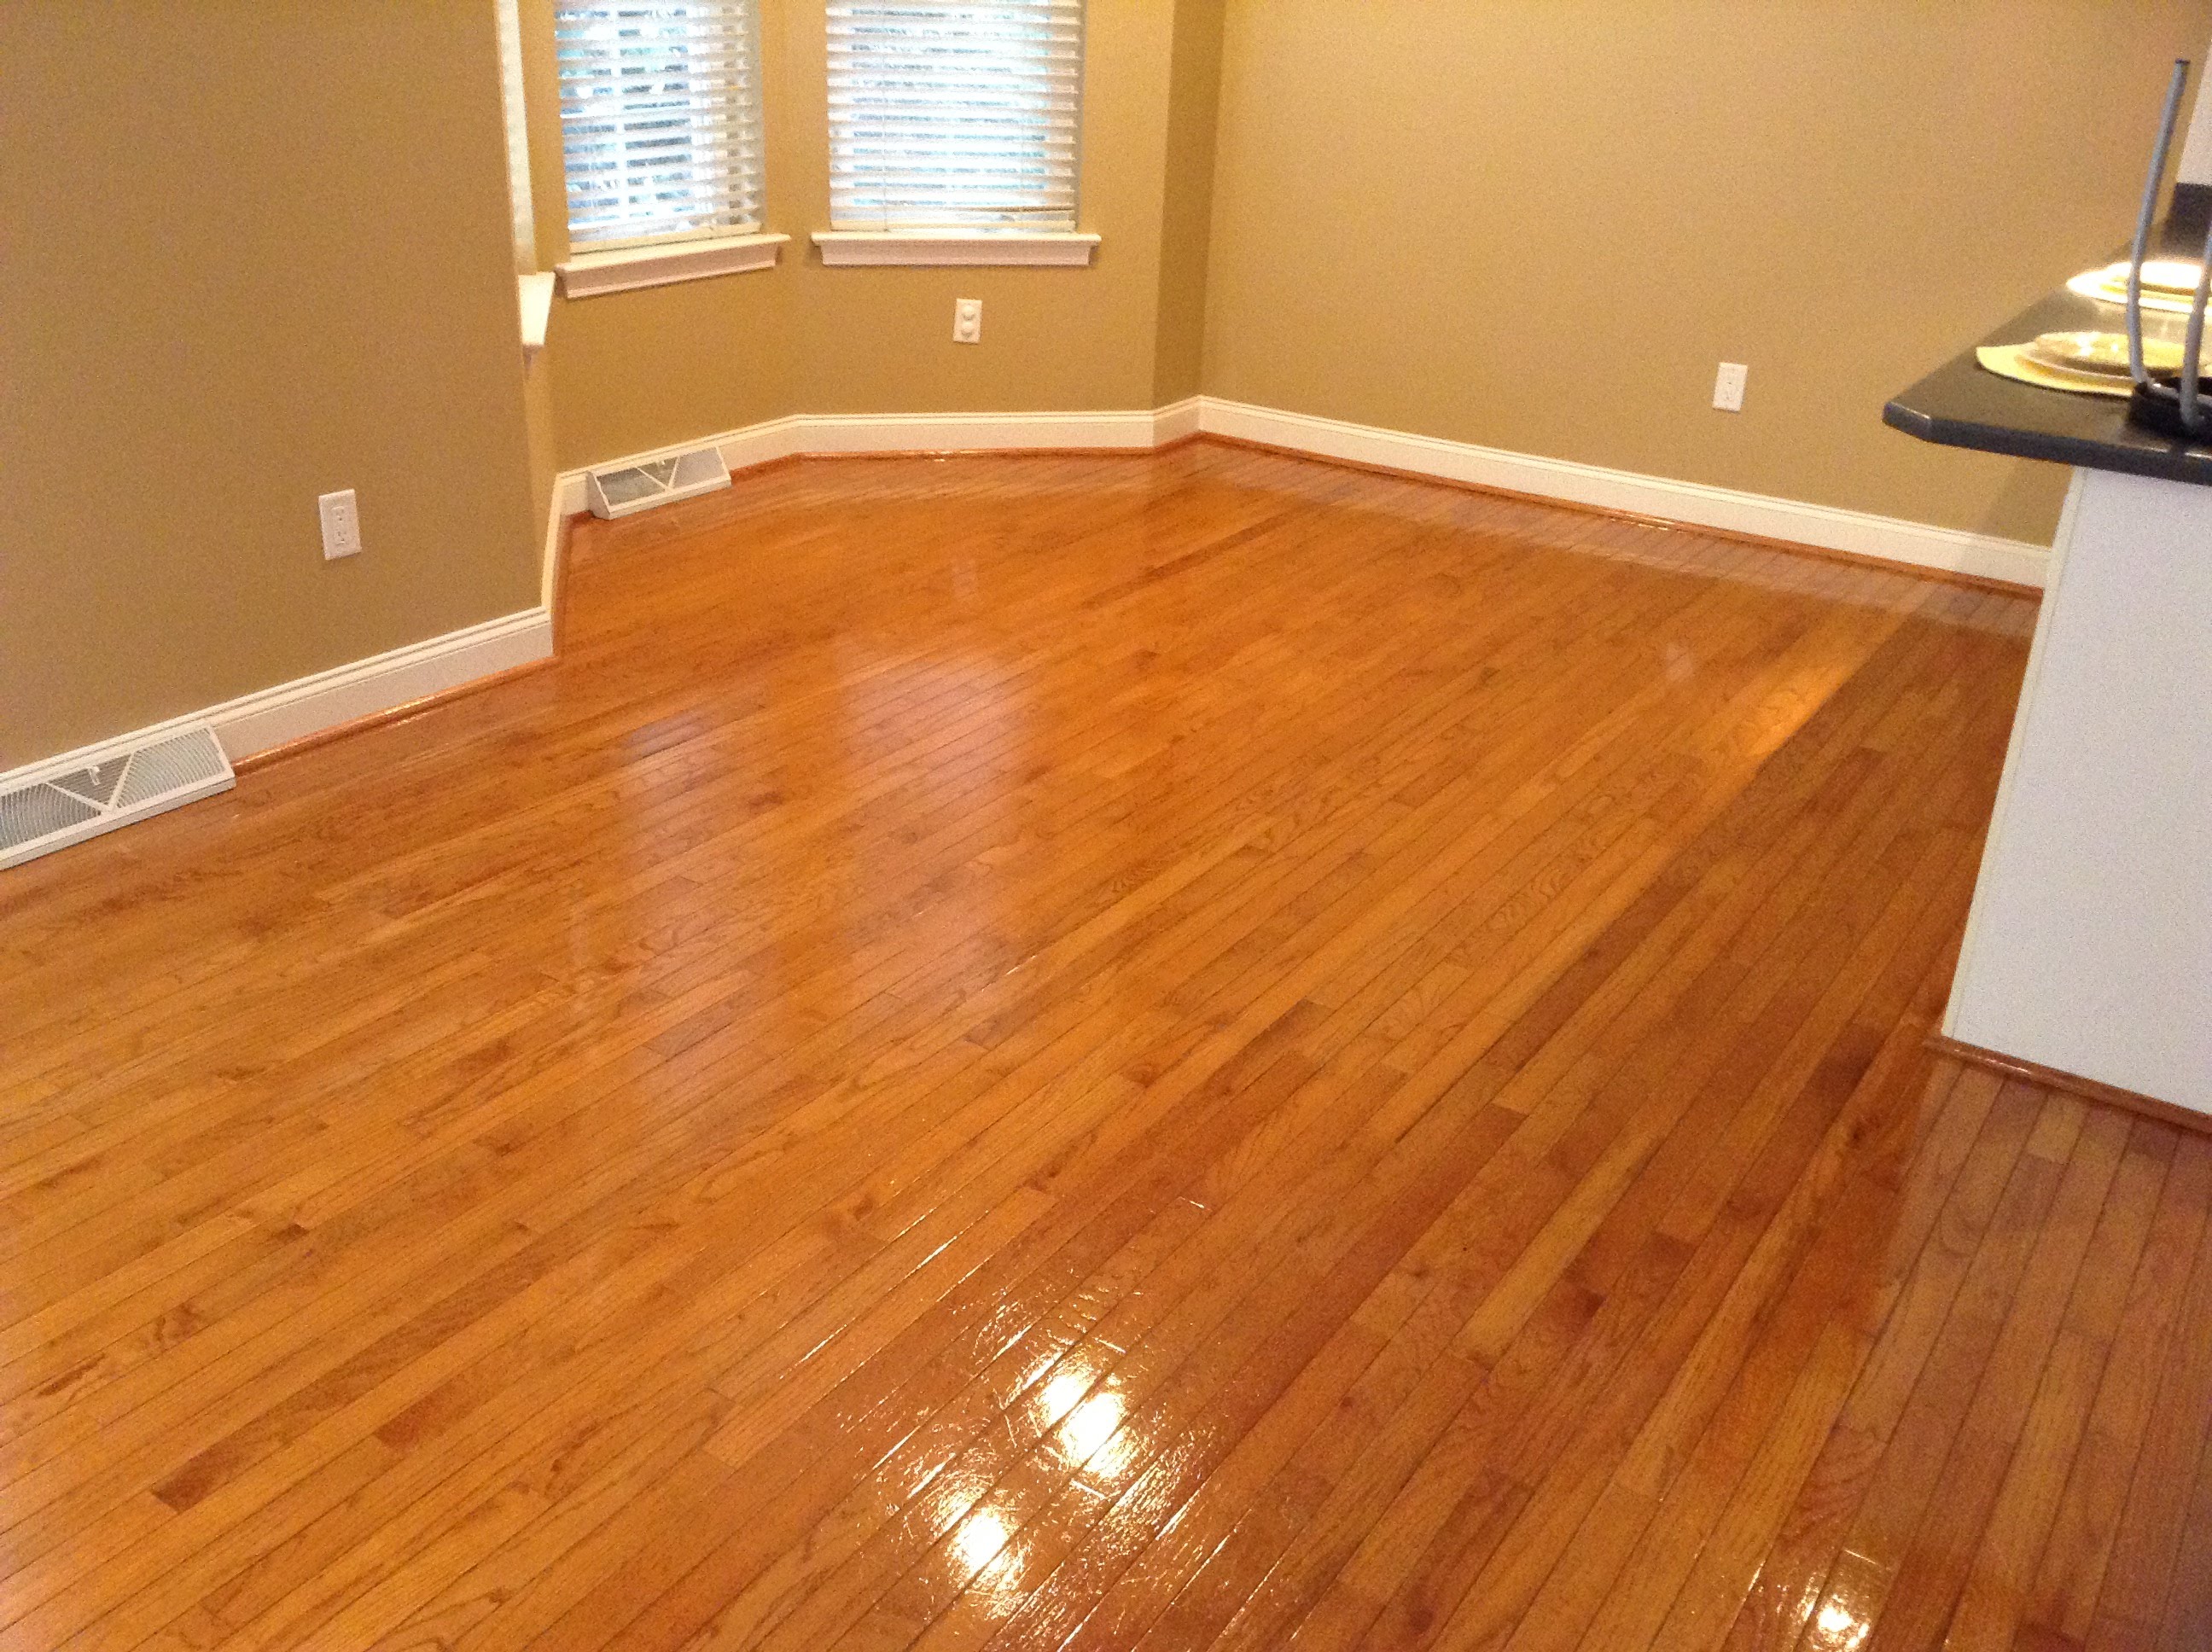 Squeaky Clean Floors Newly Red, Squeaky Clean Hardwood Floor Cleaner